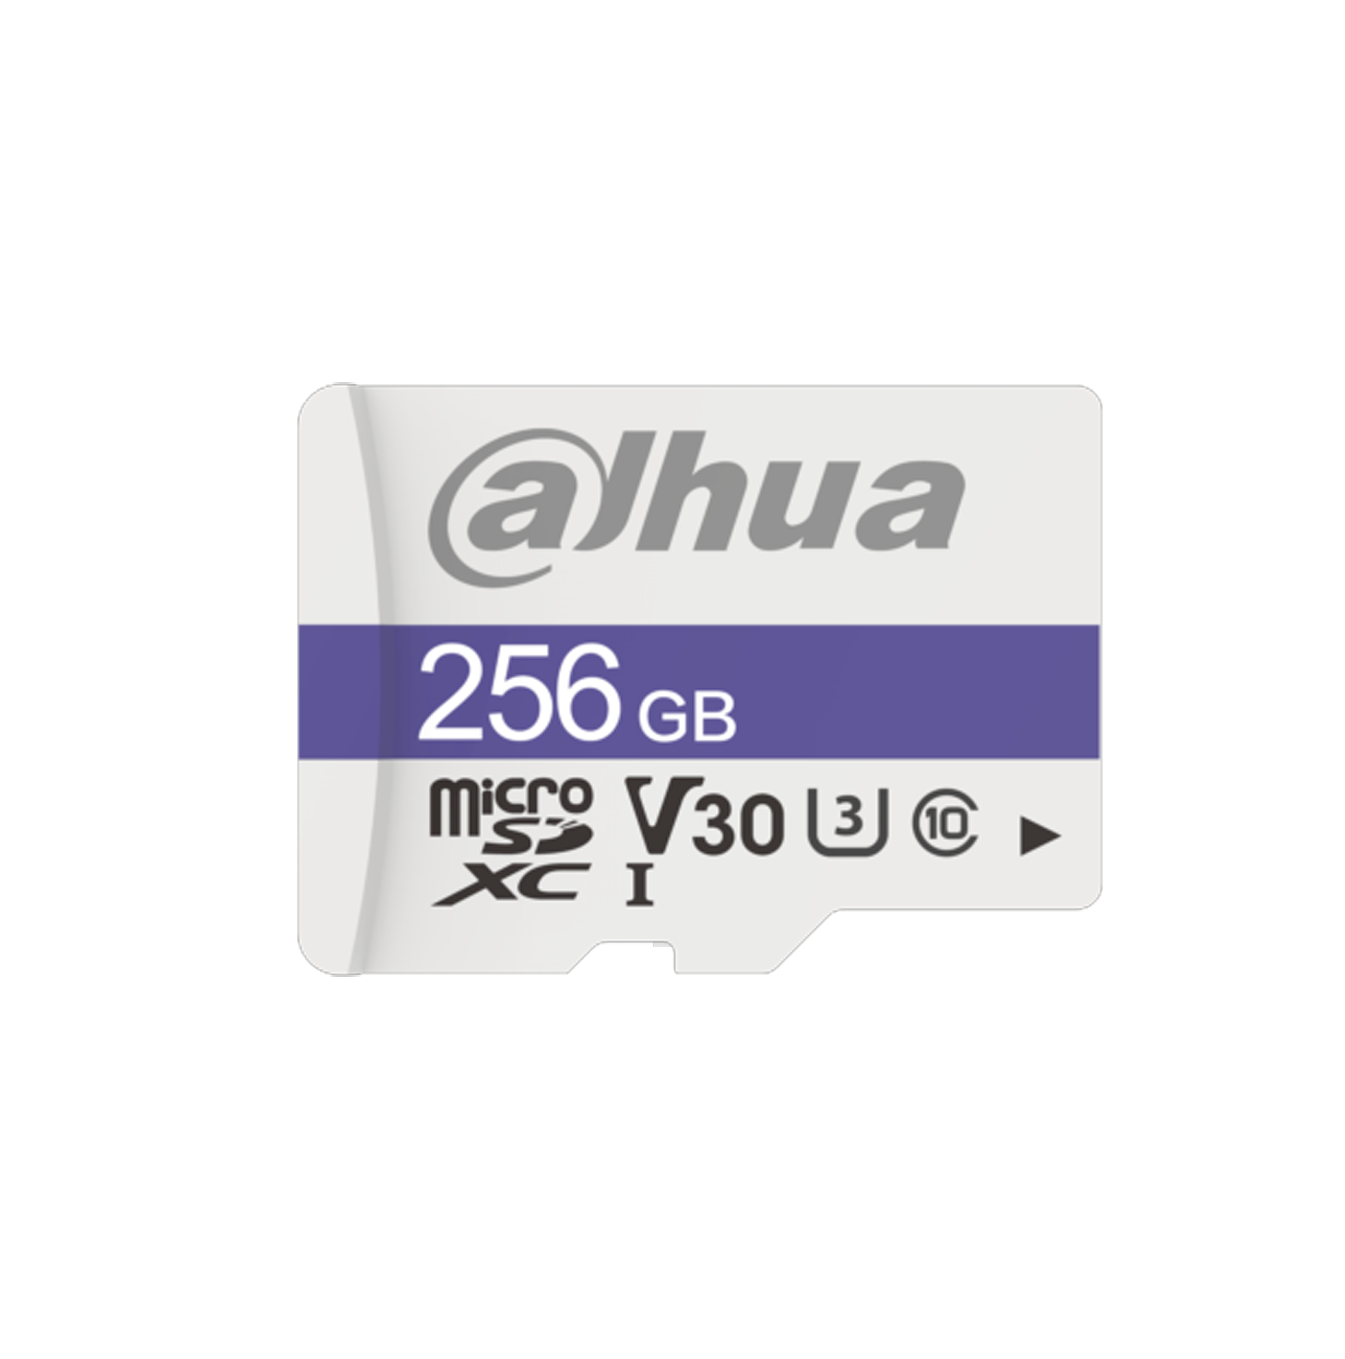 DAHUA TF-P100/128 GB - Dahua Memoria Micro SD de 128 GB